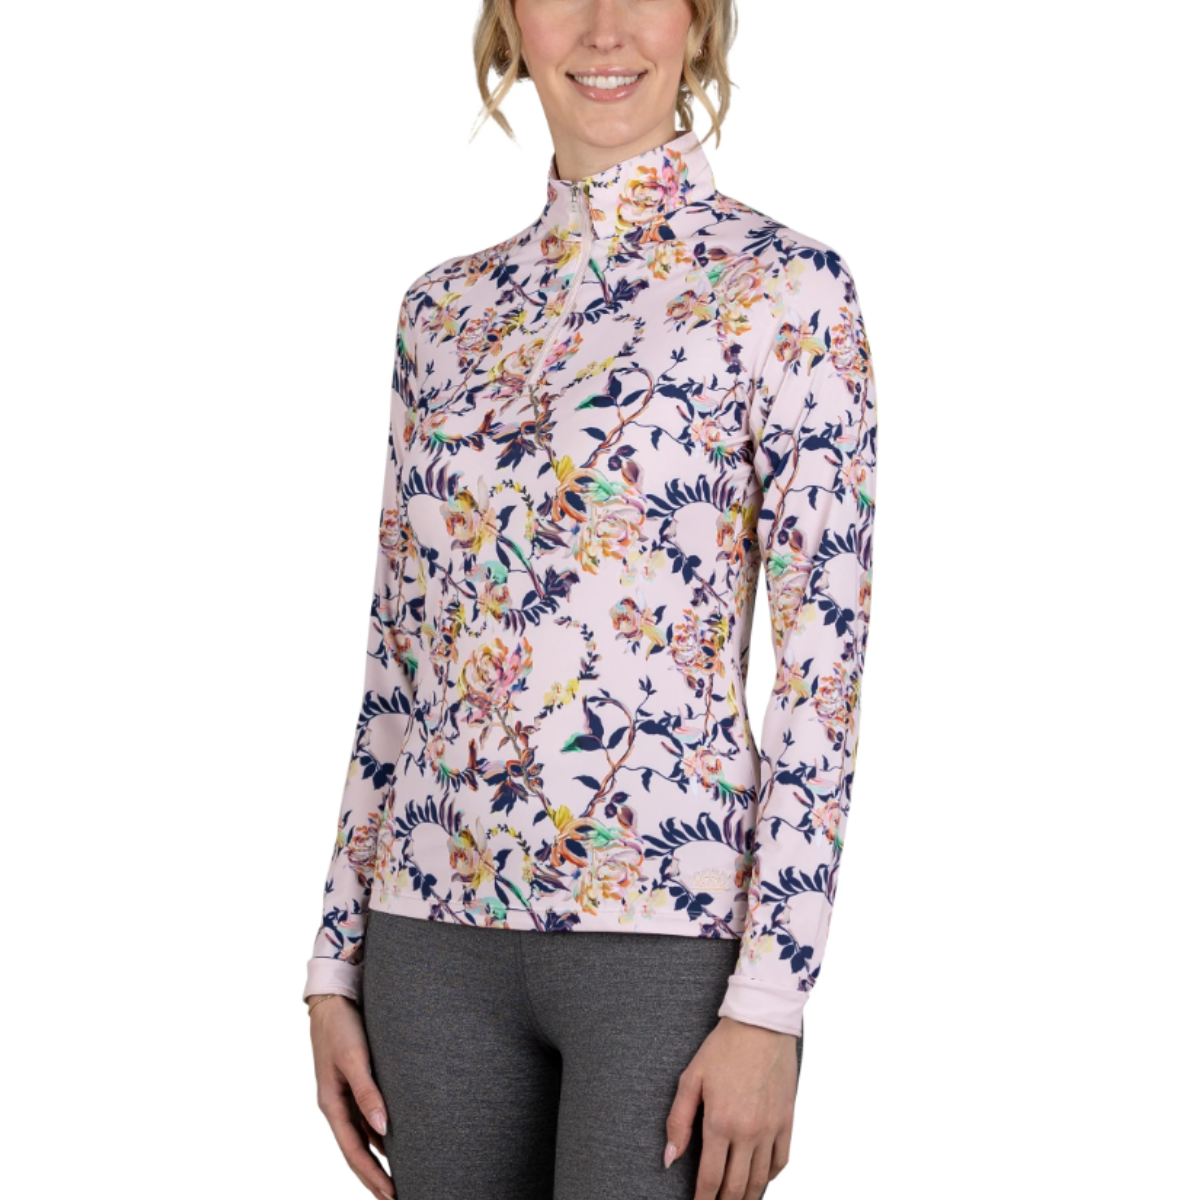 Kastel Long Sleeve 1/4 Zip Shirt in Paintbrush Florals 